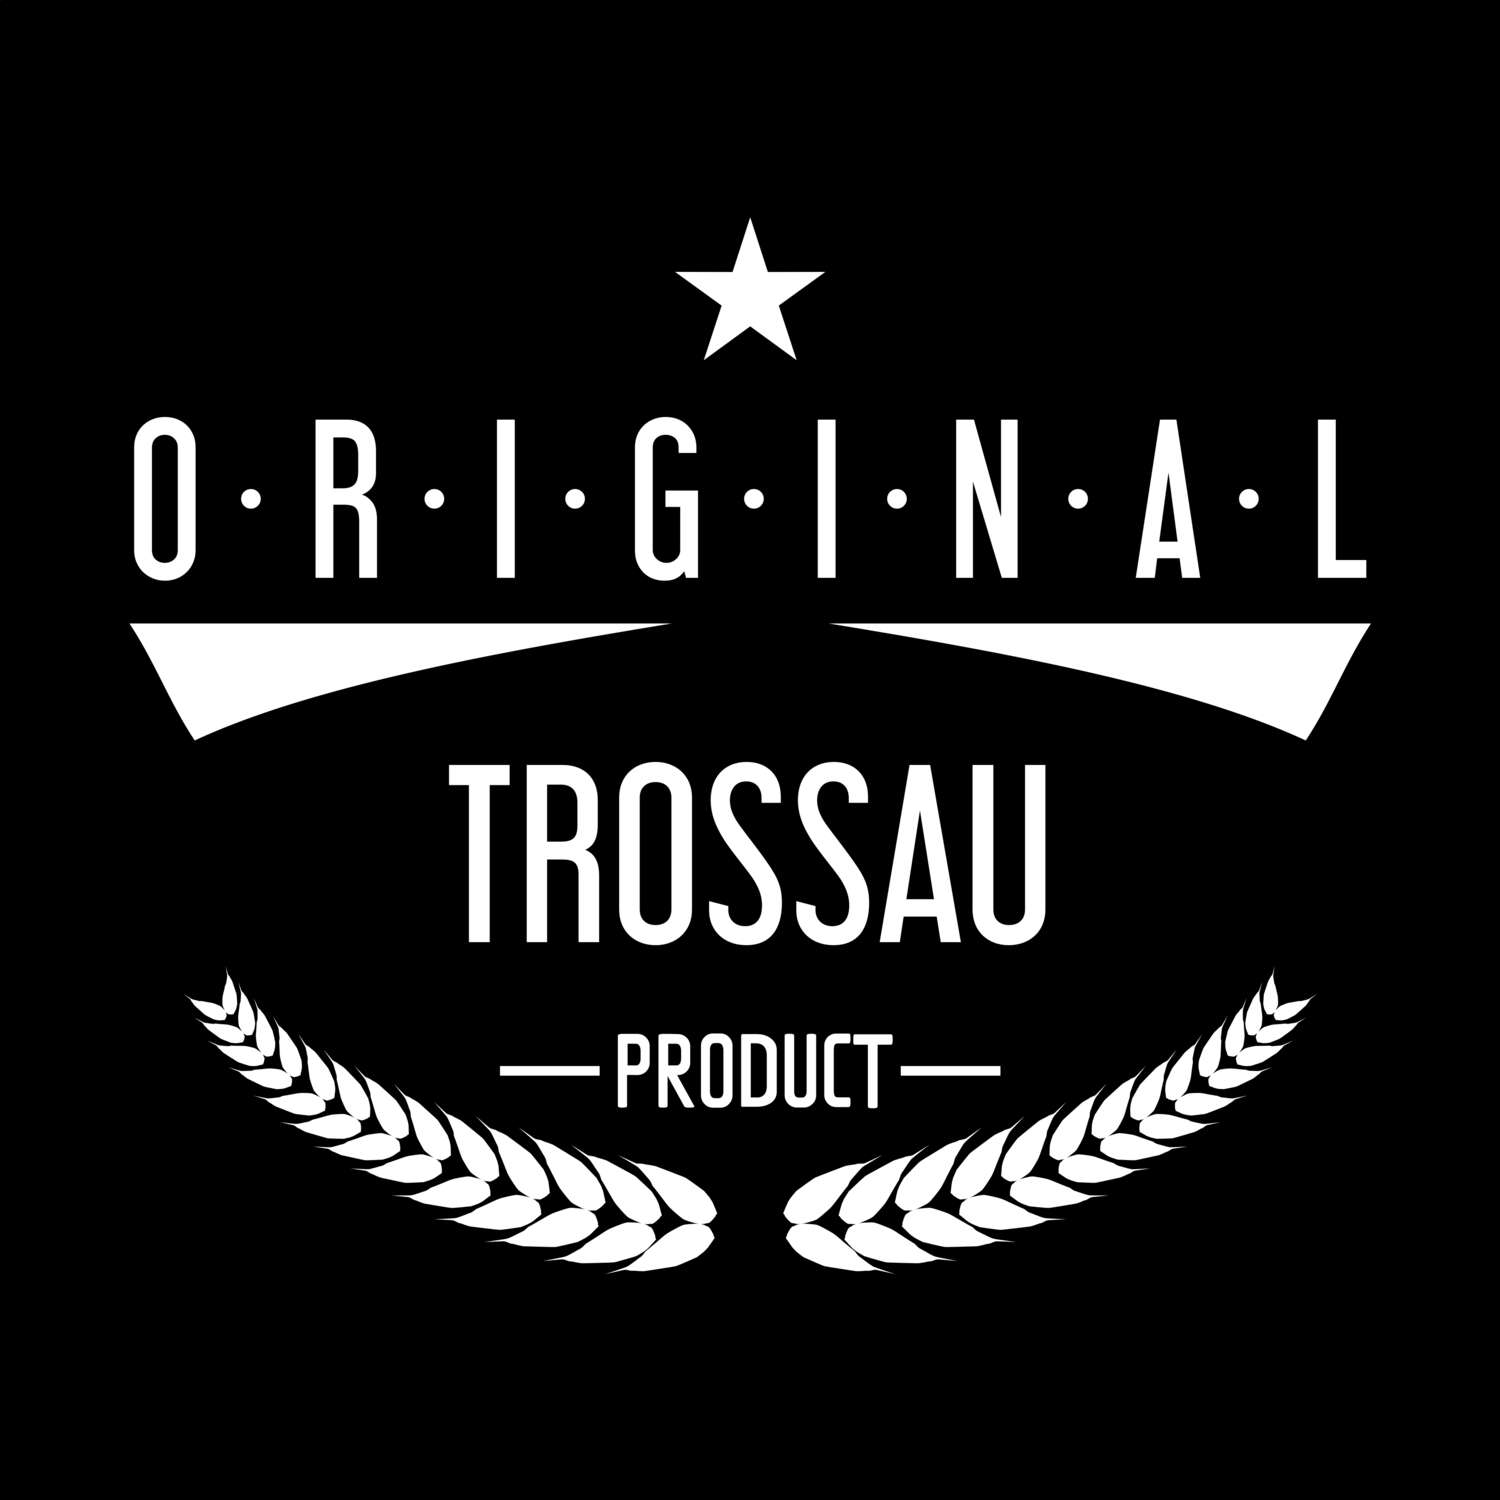 Trossau T-Shirt »Original Product«